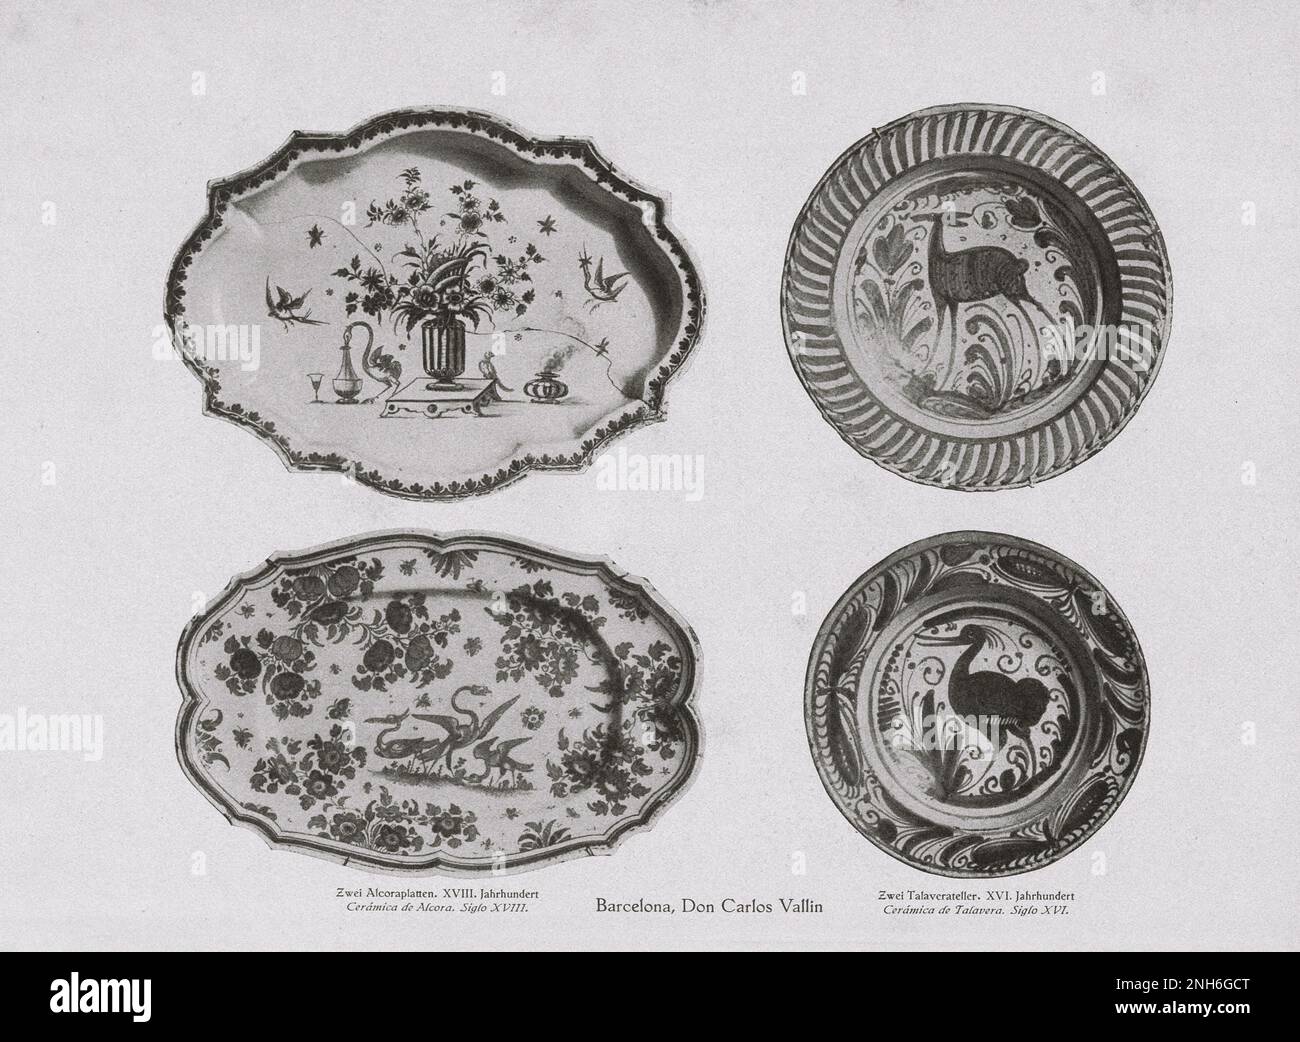 Kunst des alten Spaniens. Vintage-Fotos von zwei Alcora-Platten. XVIII Century (links) zwei talavera-Platten. XVI Century (rechts) - die Töpferei Talavera ist eine spanische Töpfertradition aus Talavera de la Reina Stockfoto